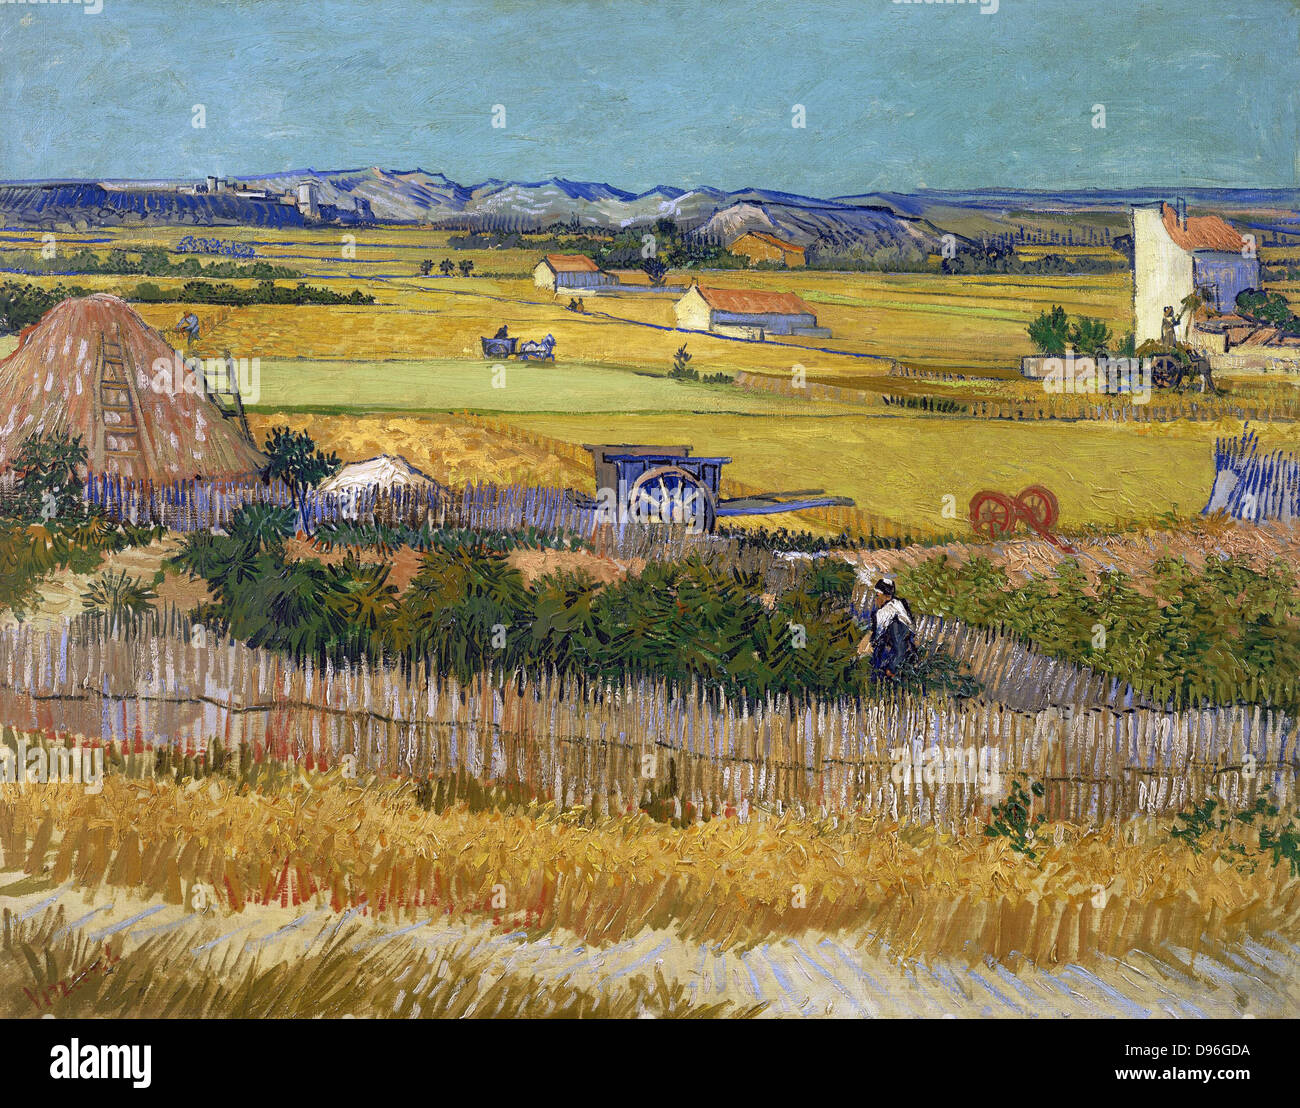 "La cosecha", una pintura de Vincent Van Gogh representando una escena rural. Óleo sobre lienzo. 1888 AD. Foto de stock